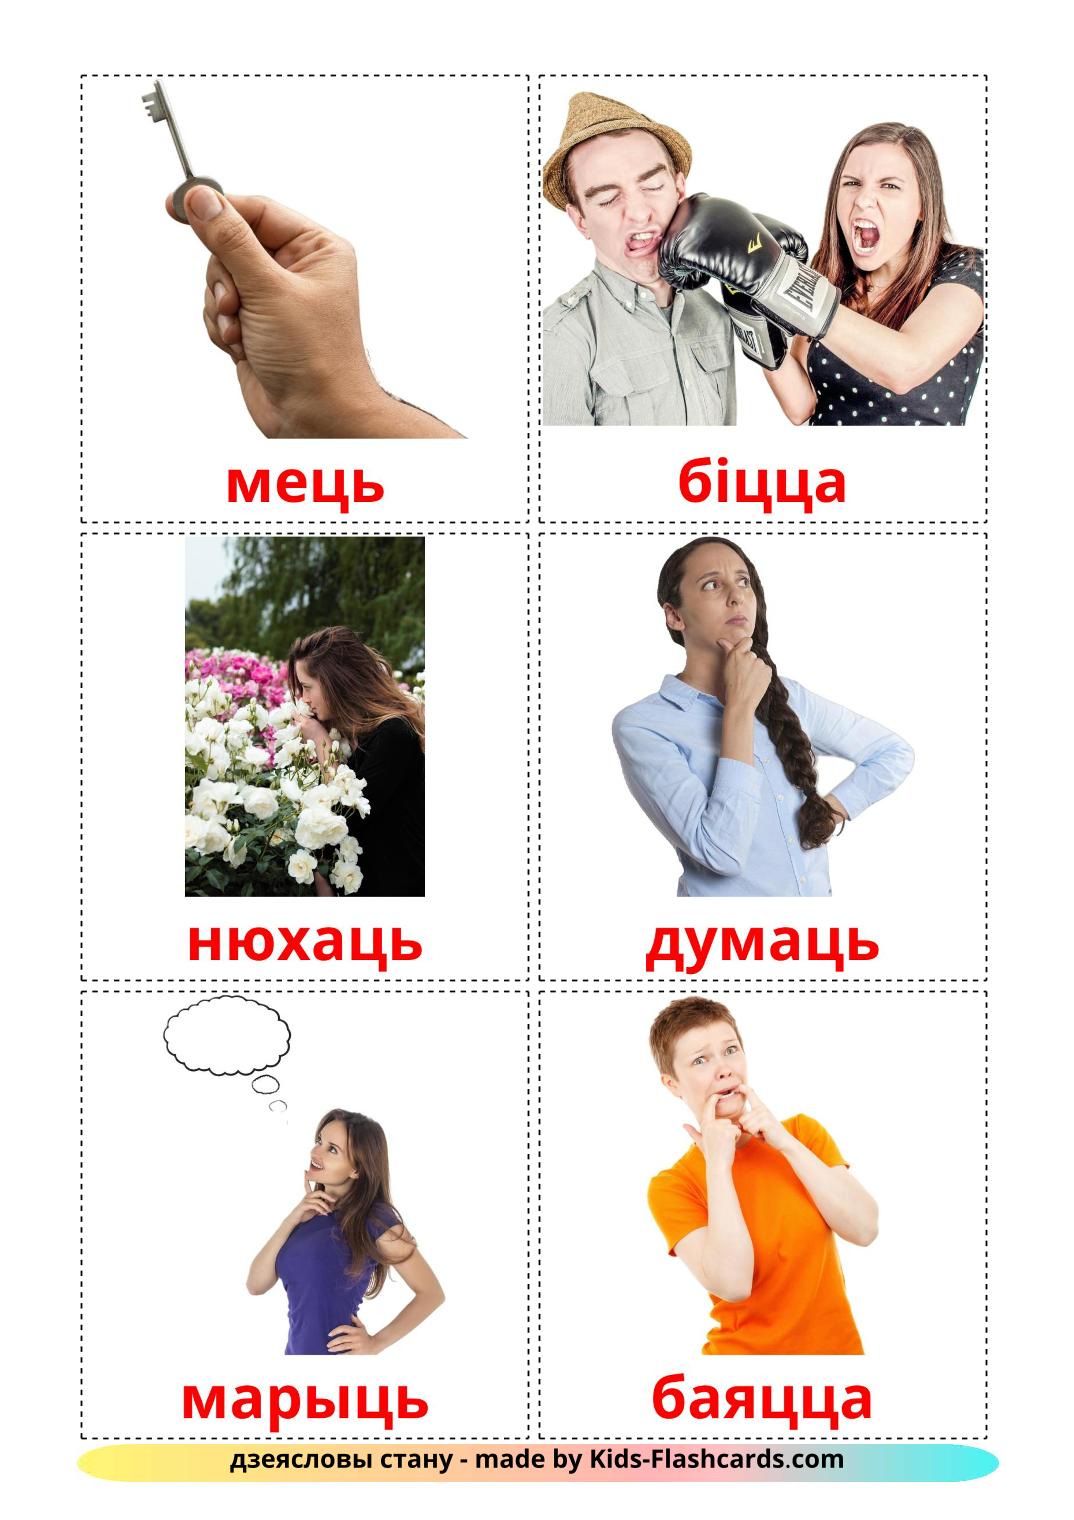 Staat werkwoorden - 23 gratis printbare wit-russische kaarten